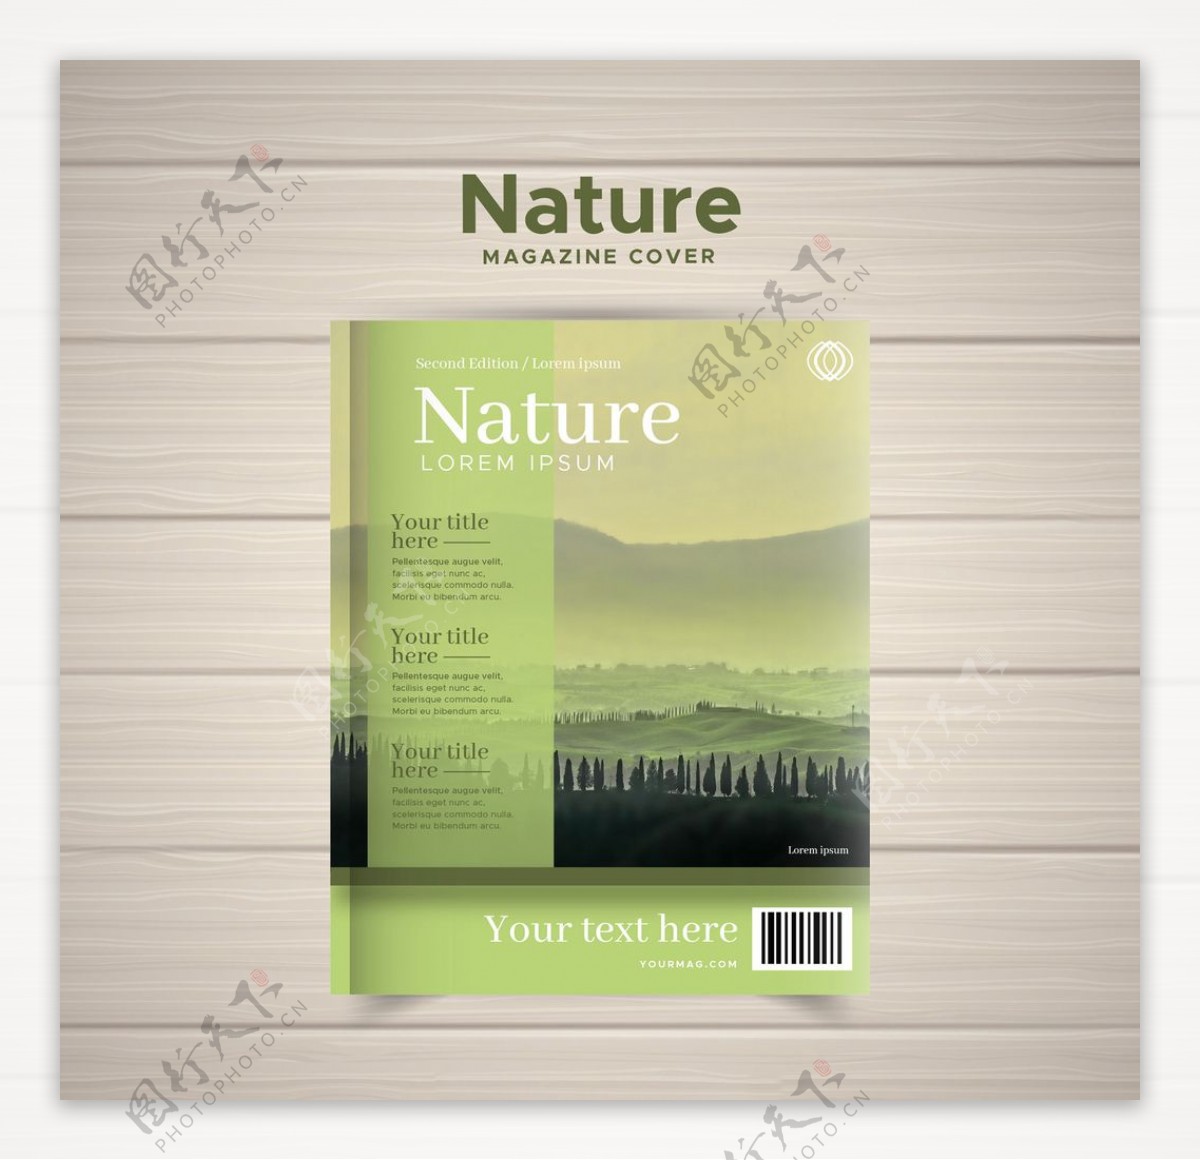 自然风光书籍封面